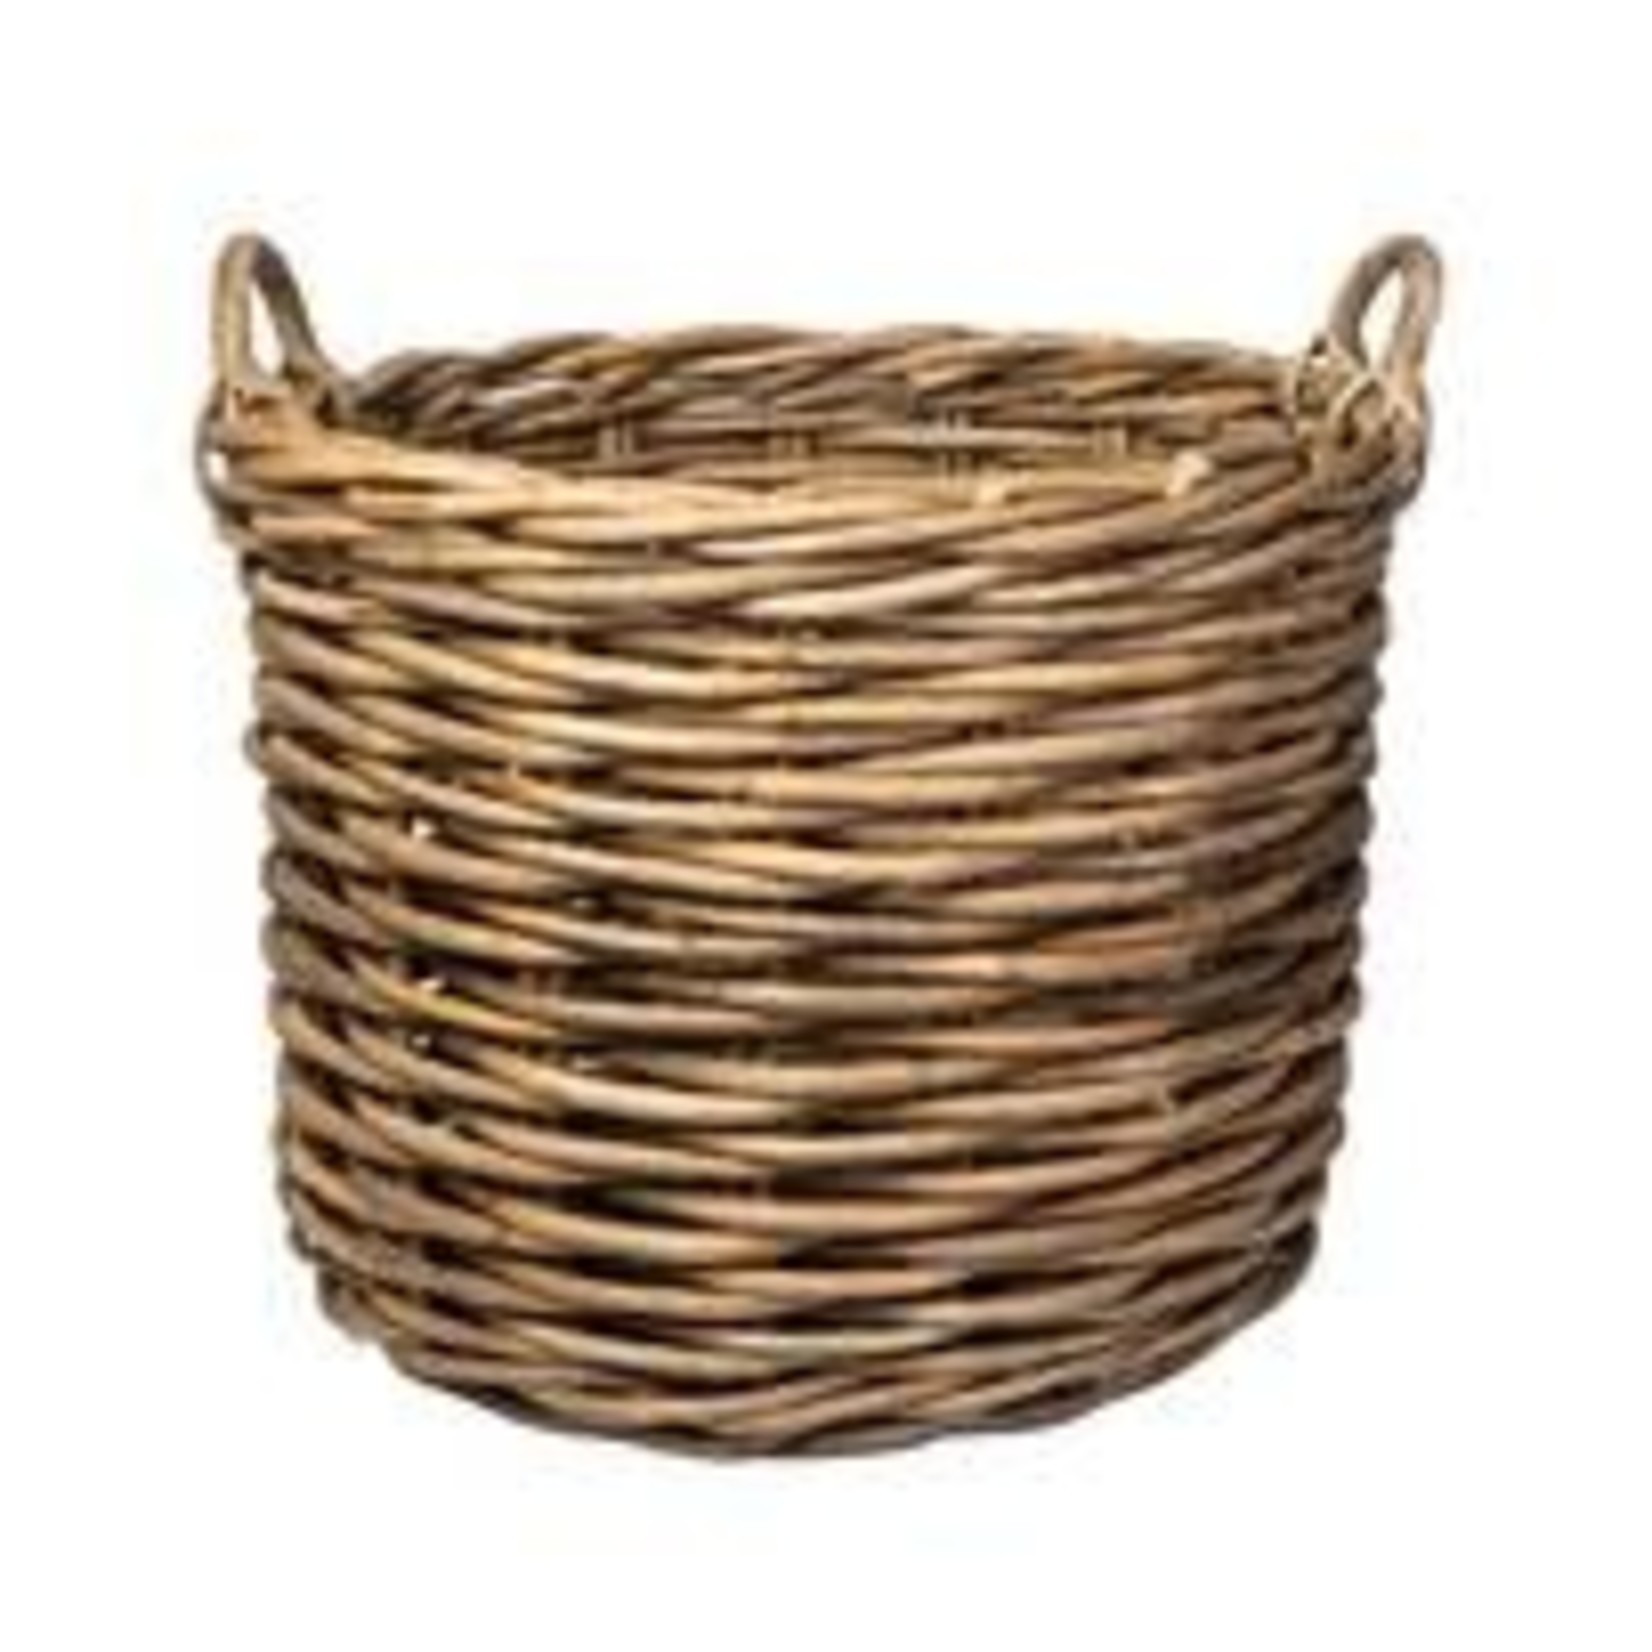 Bidk Home Large Rattan Round Basket w/ Handles